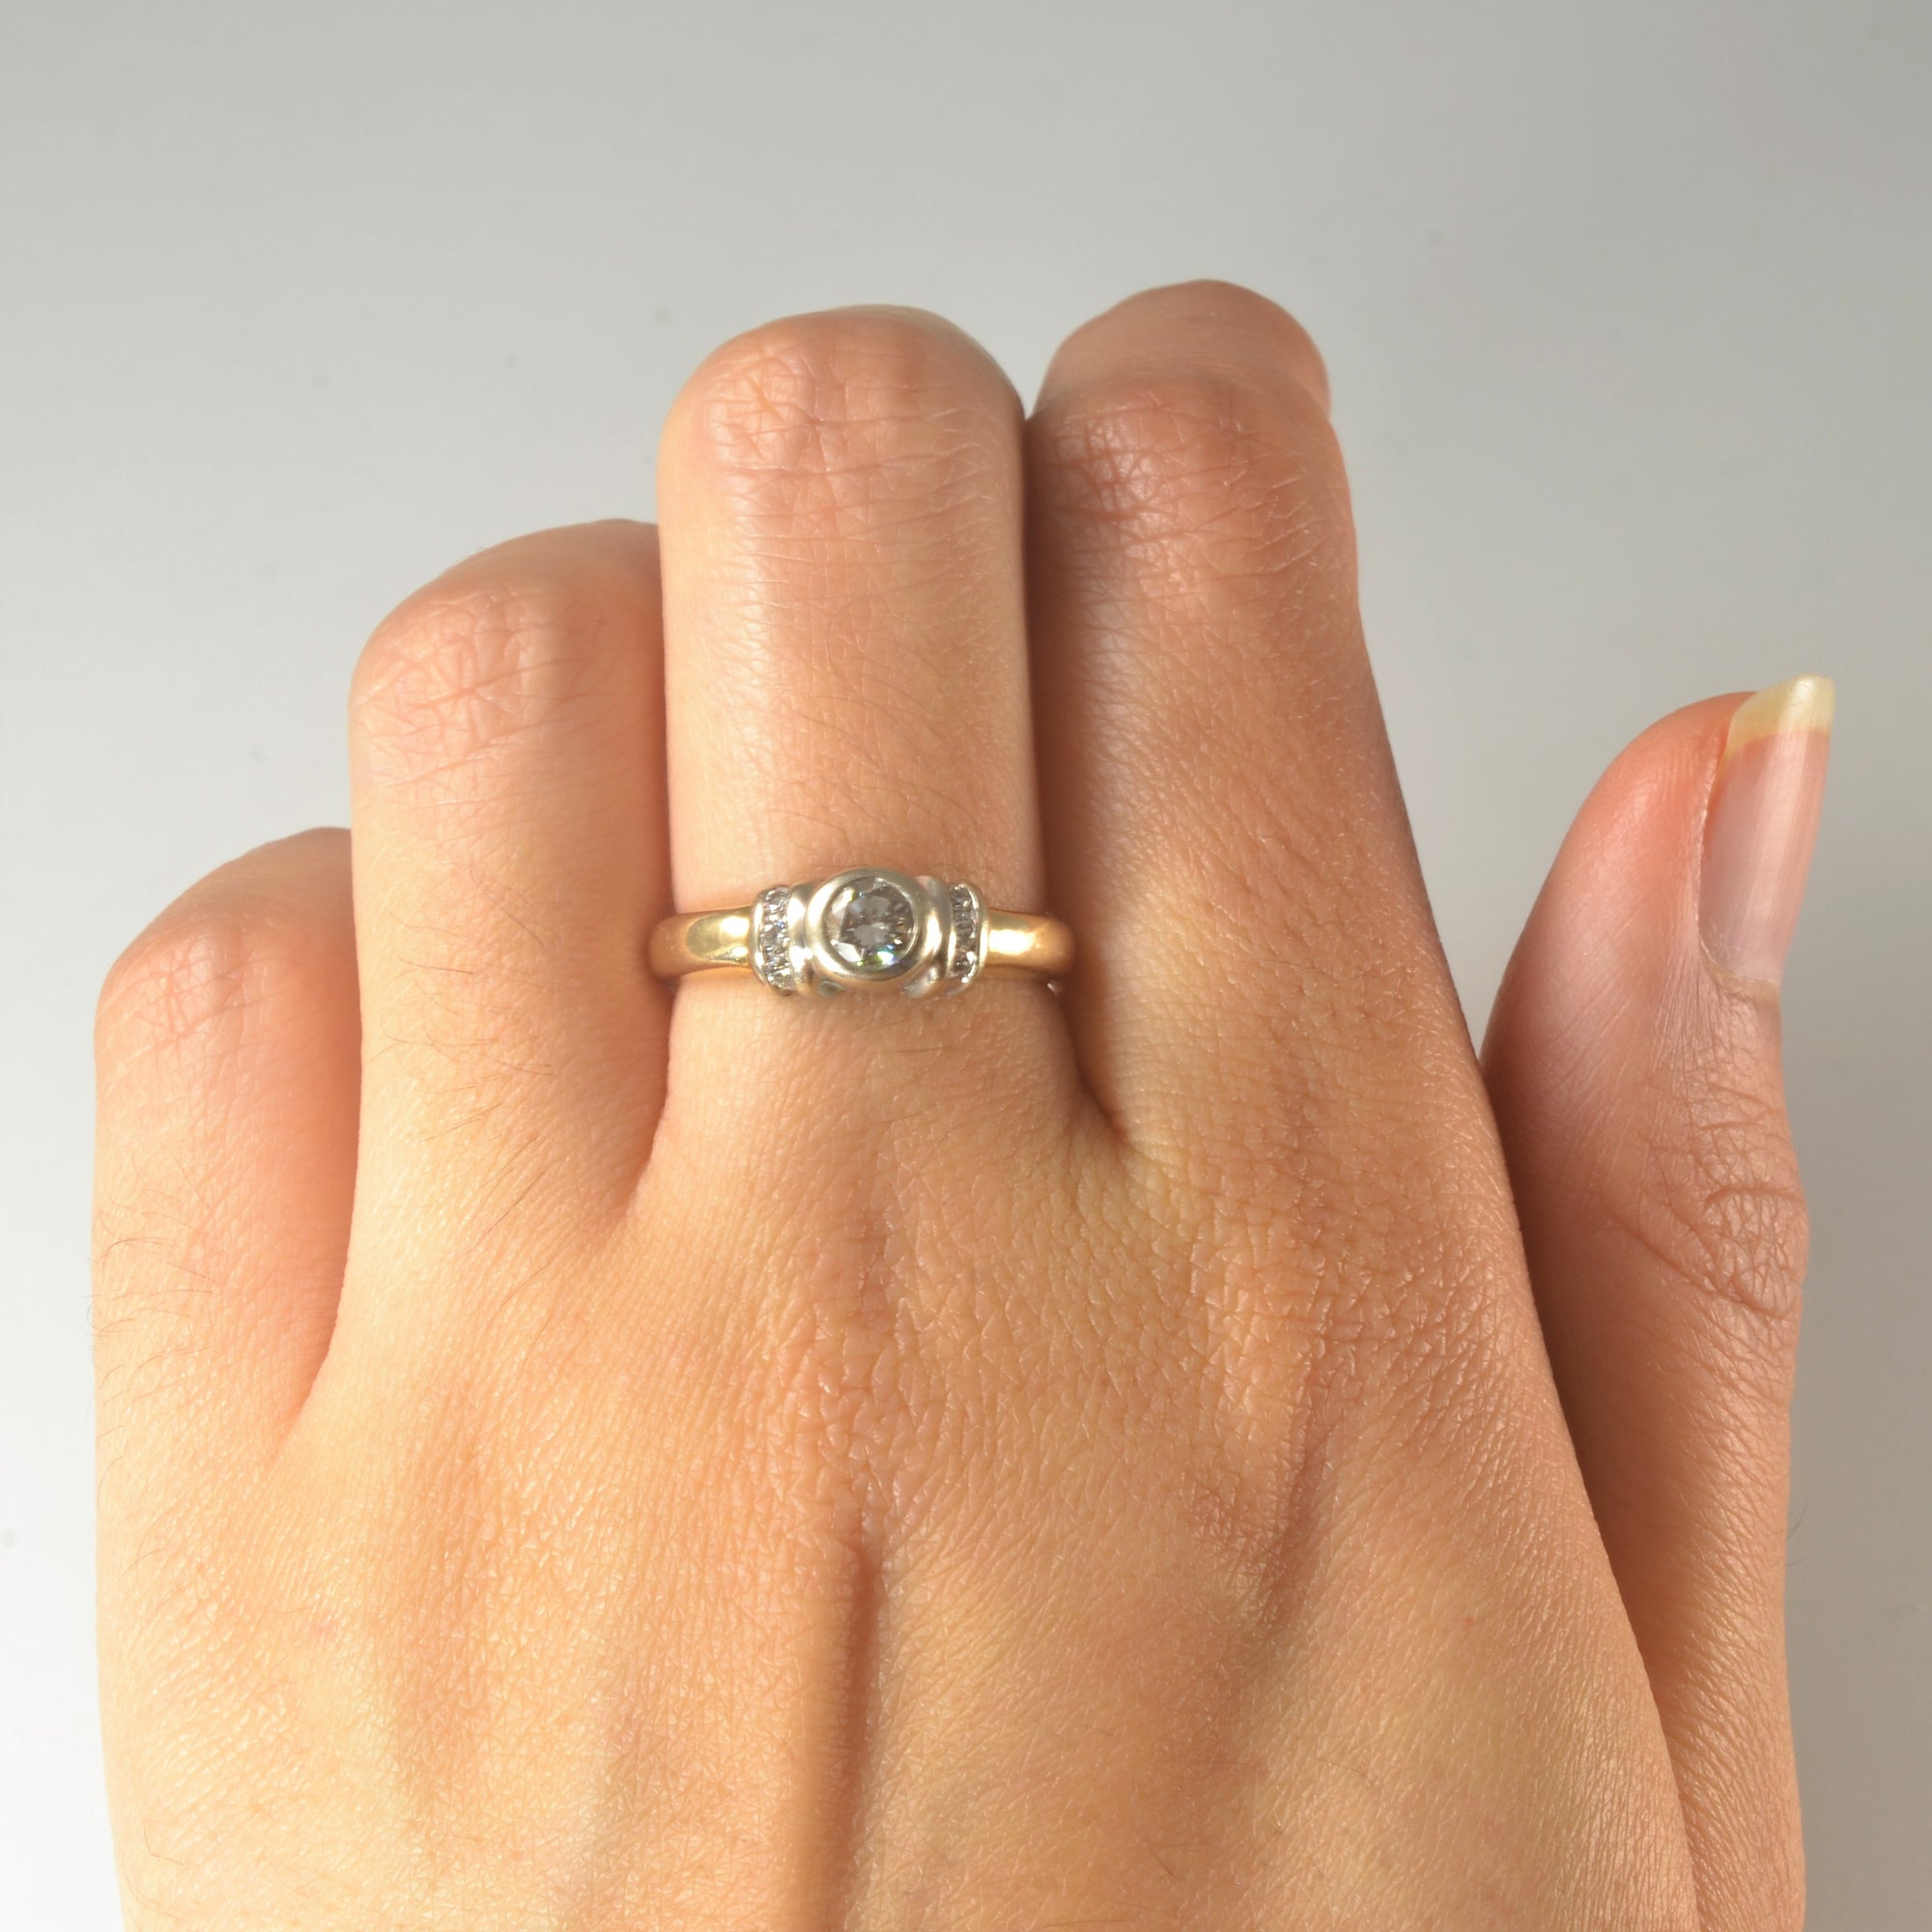 Bezel Set Diamond Ring | 0.39ctw | SZ 6.75 |